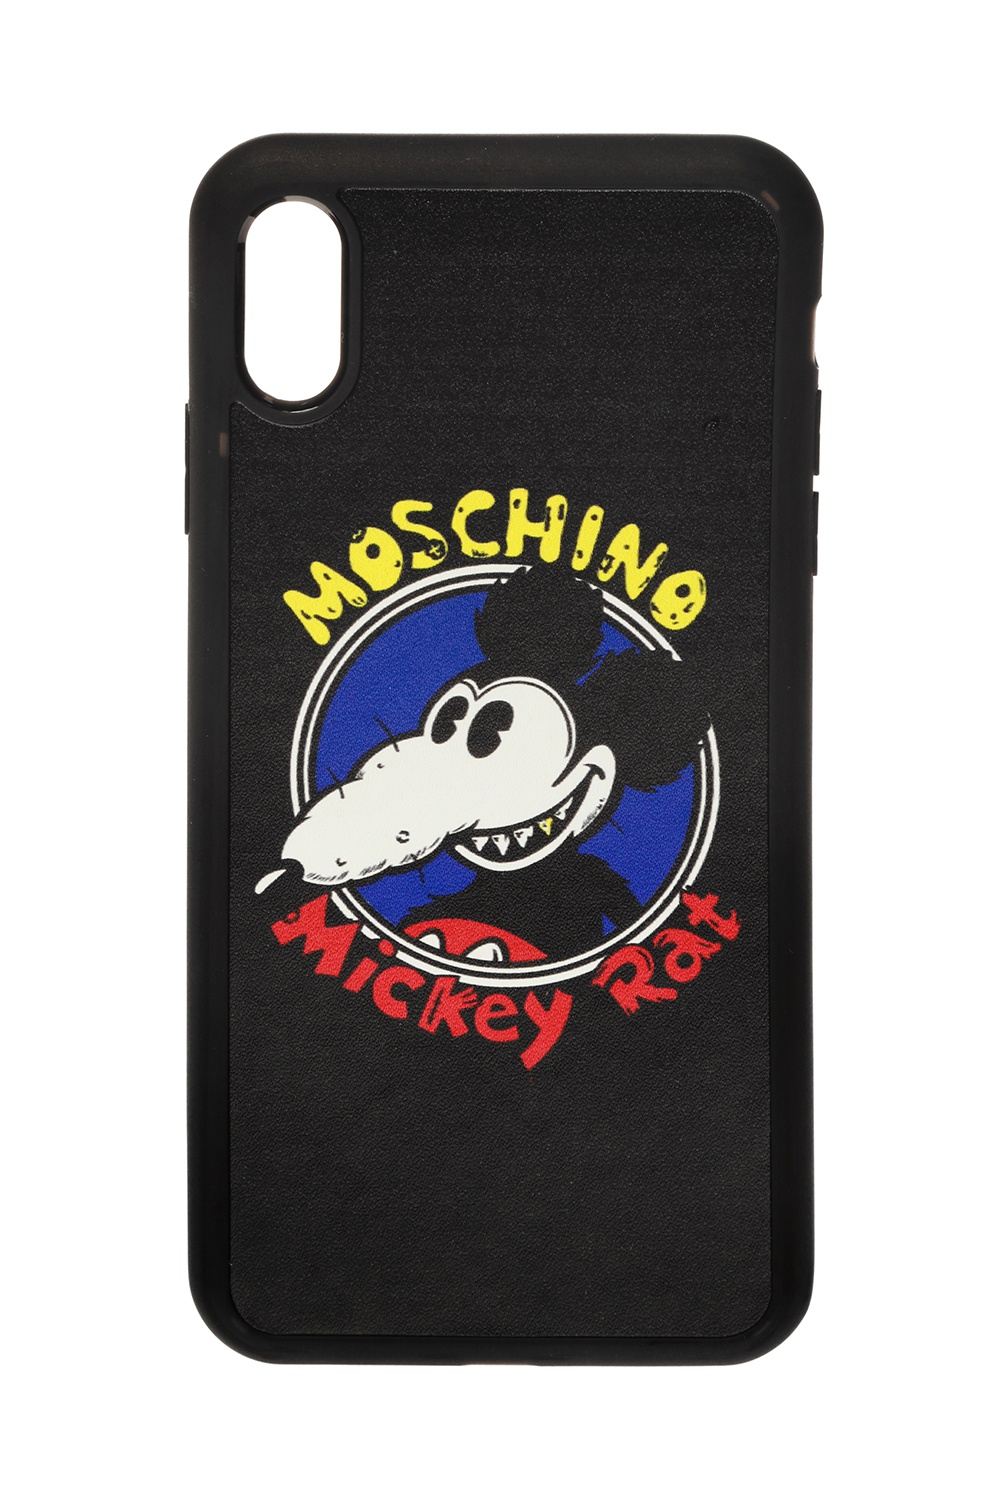 moschino phone case xs max